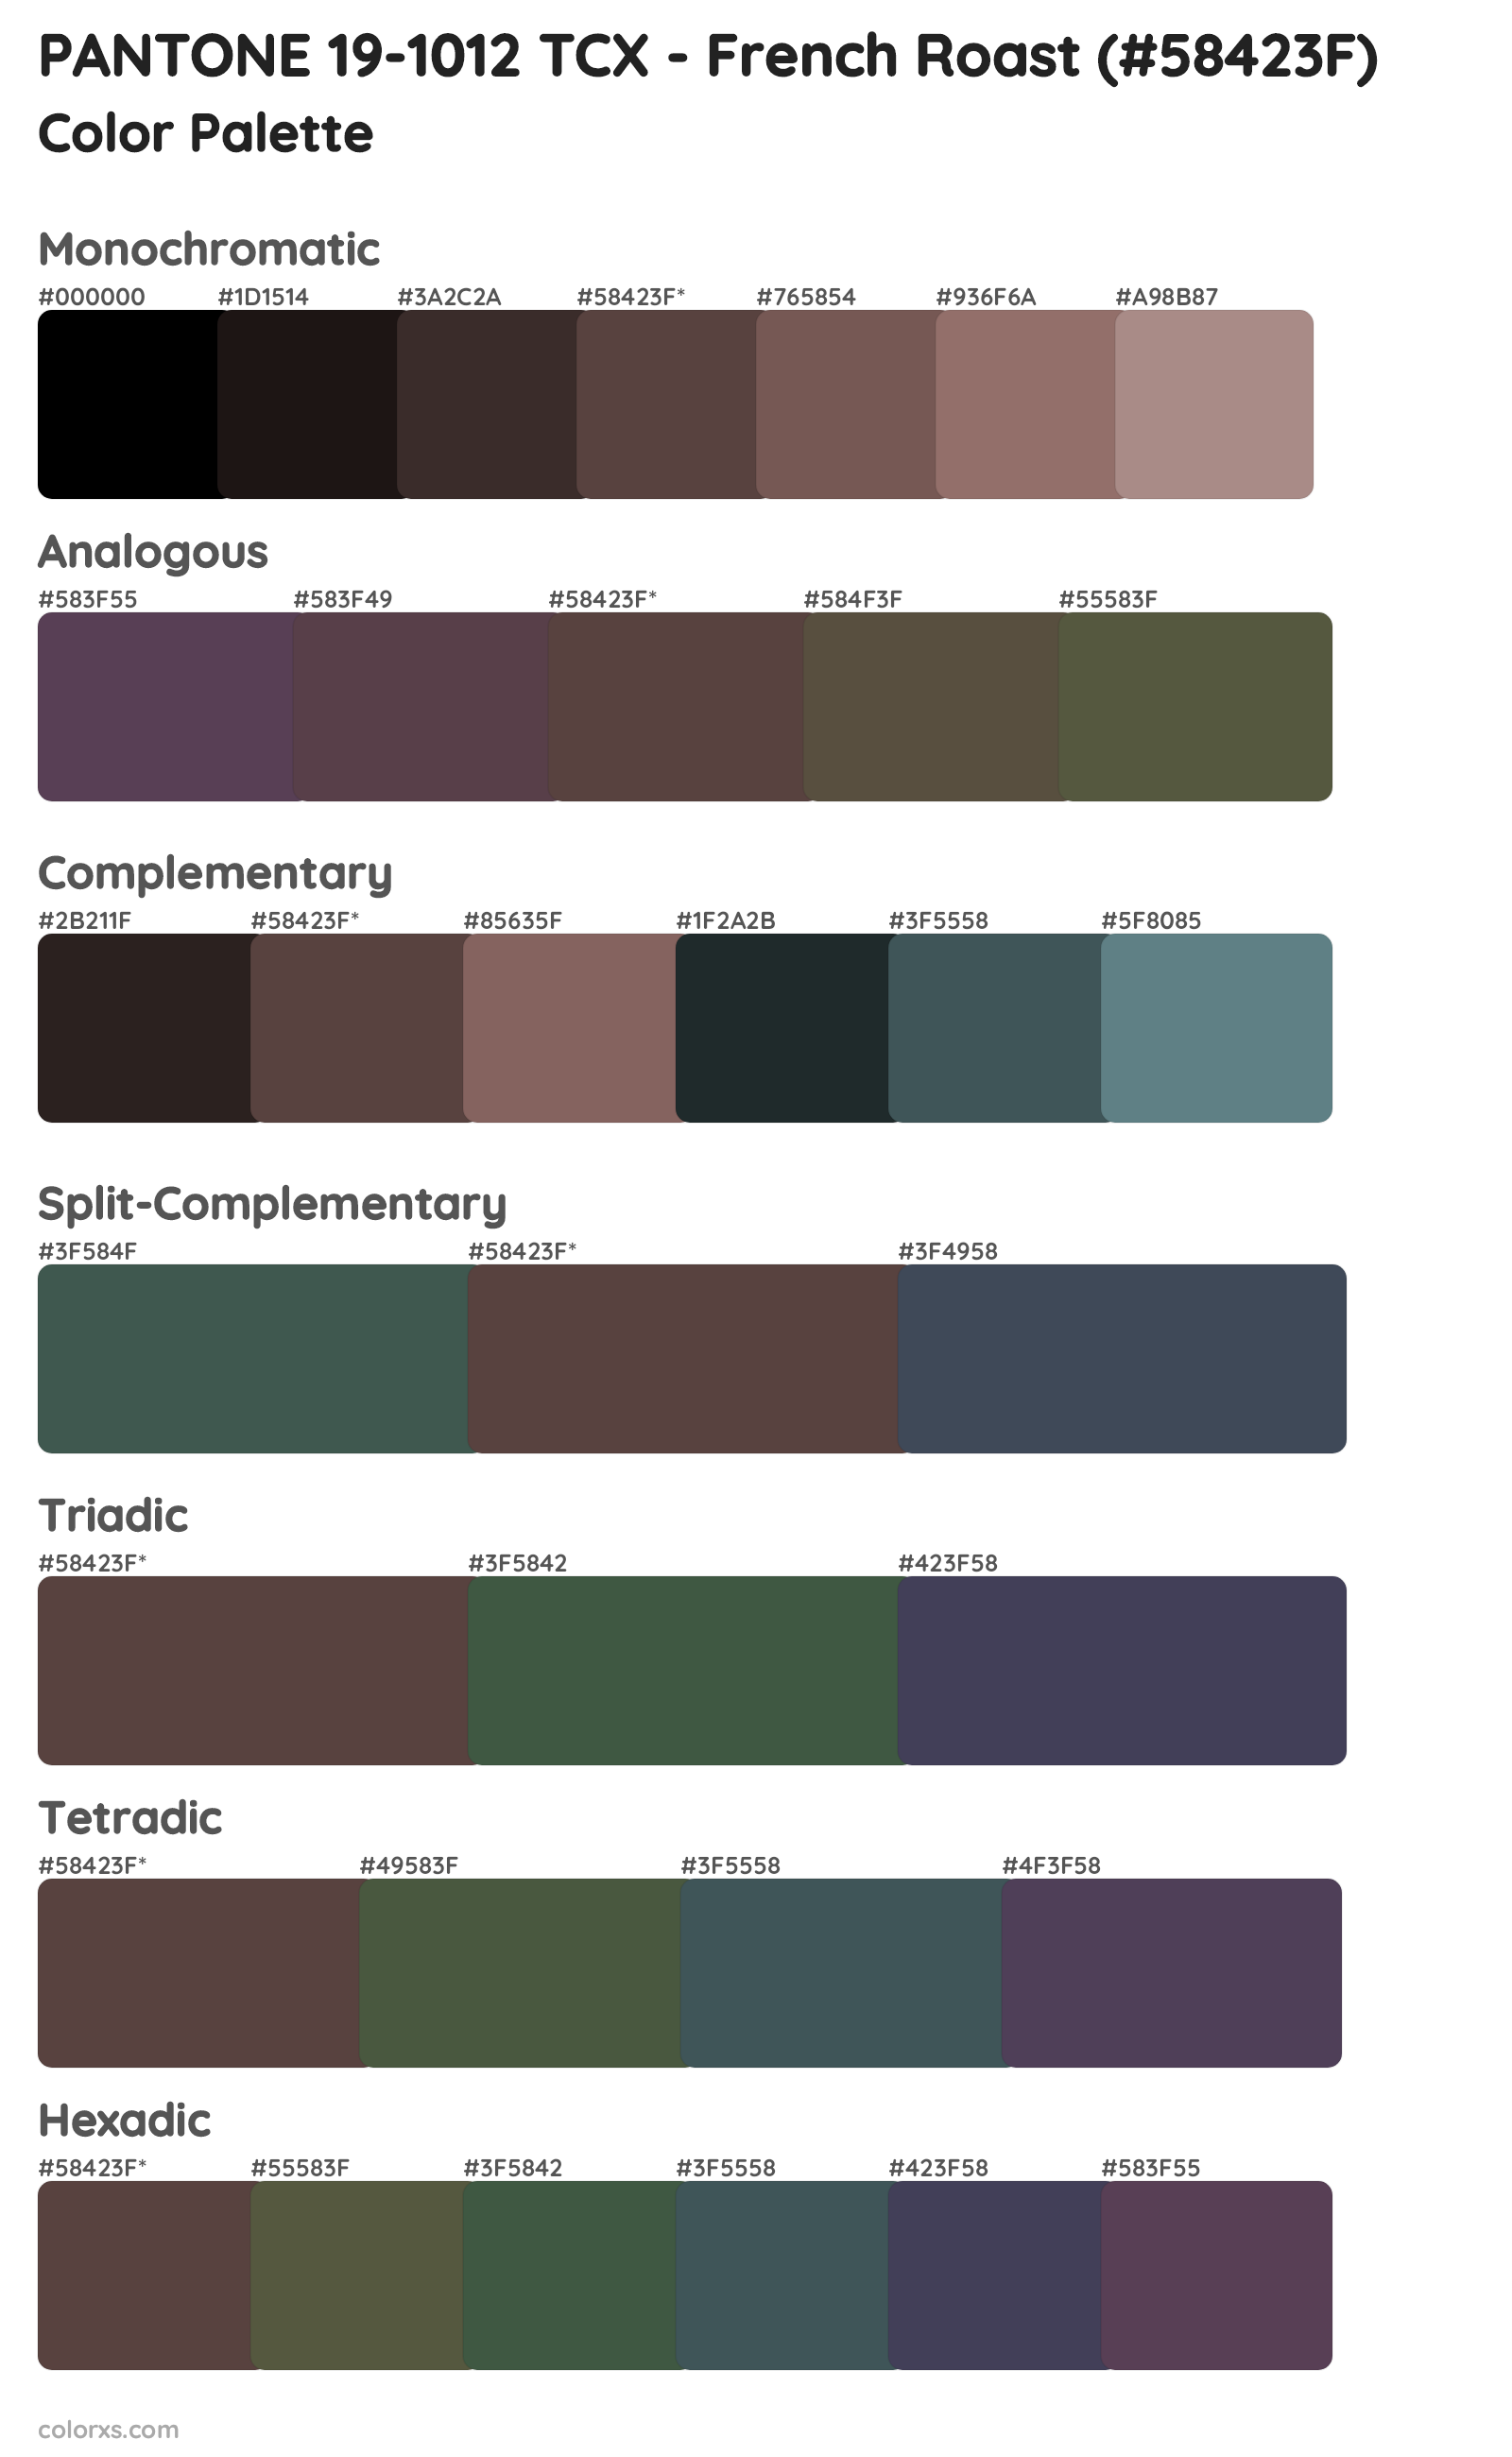 PANTONE 19-1012 TCX - French Roast Color Scheme Palettes